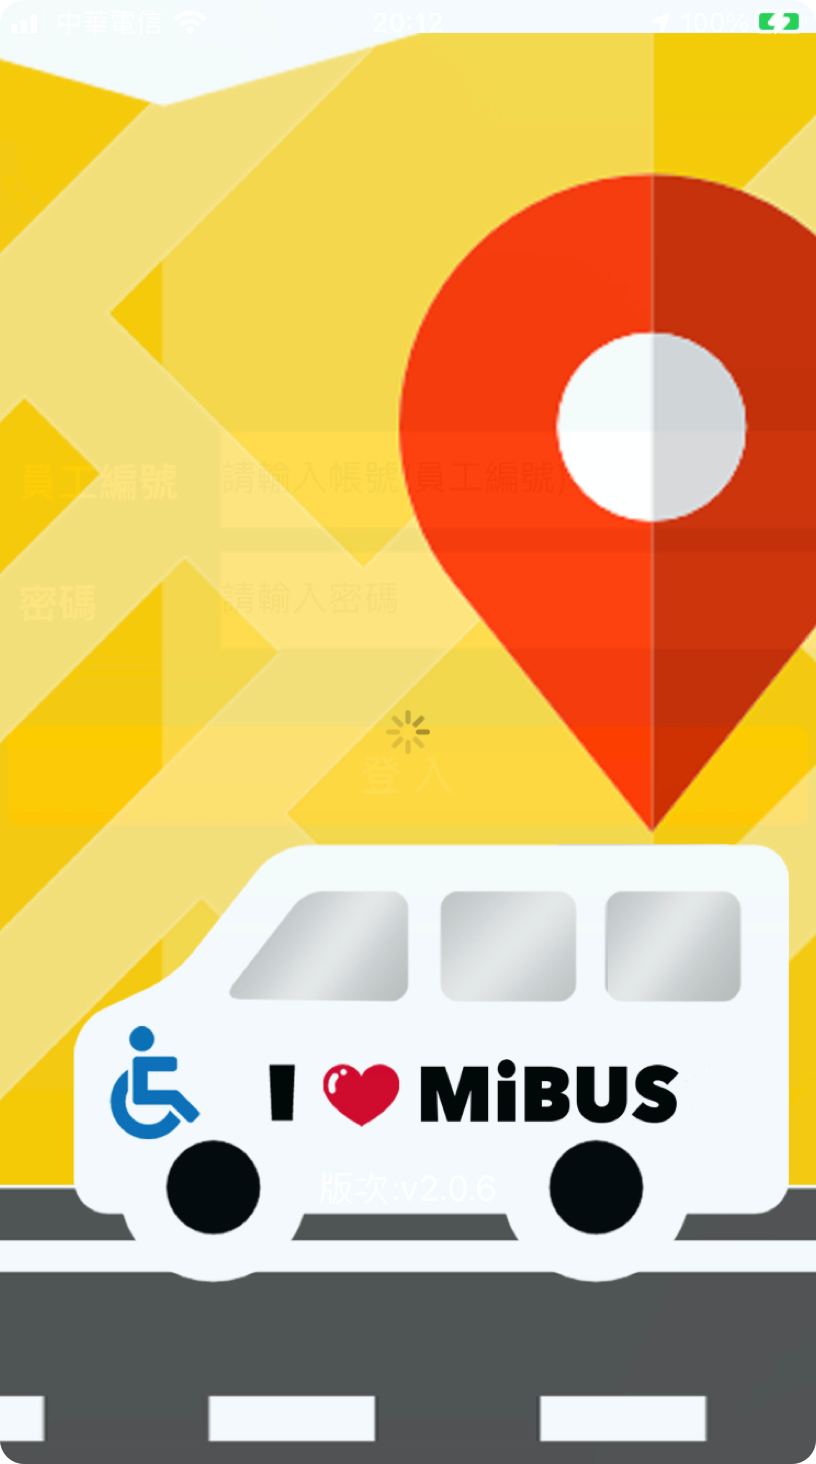 MiBus-1@3x.png